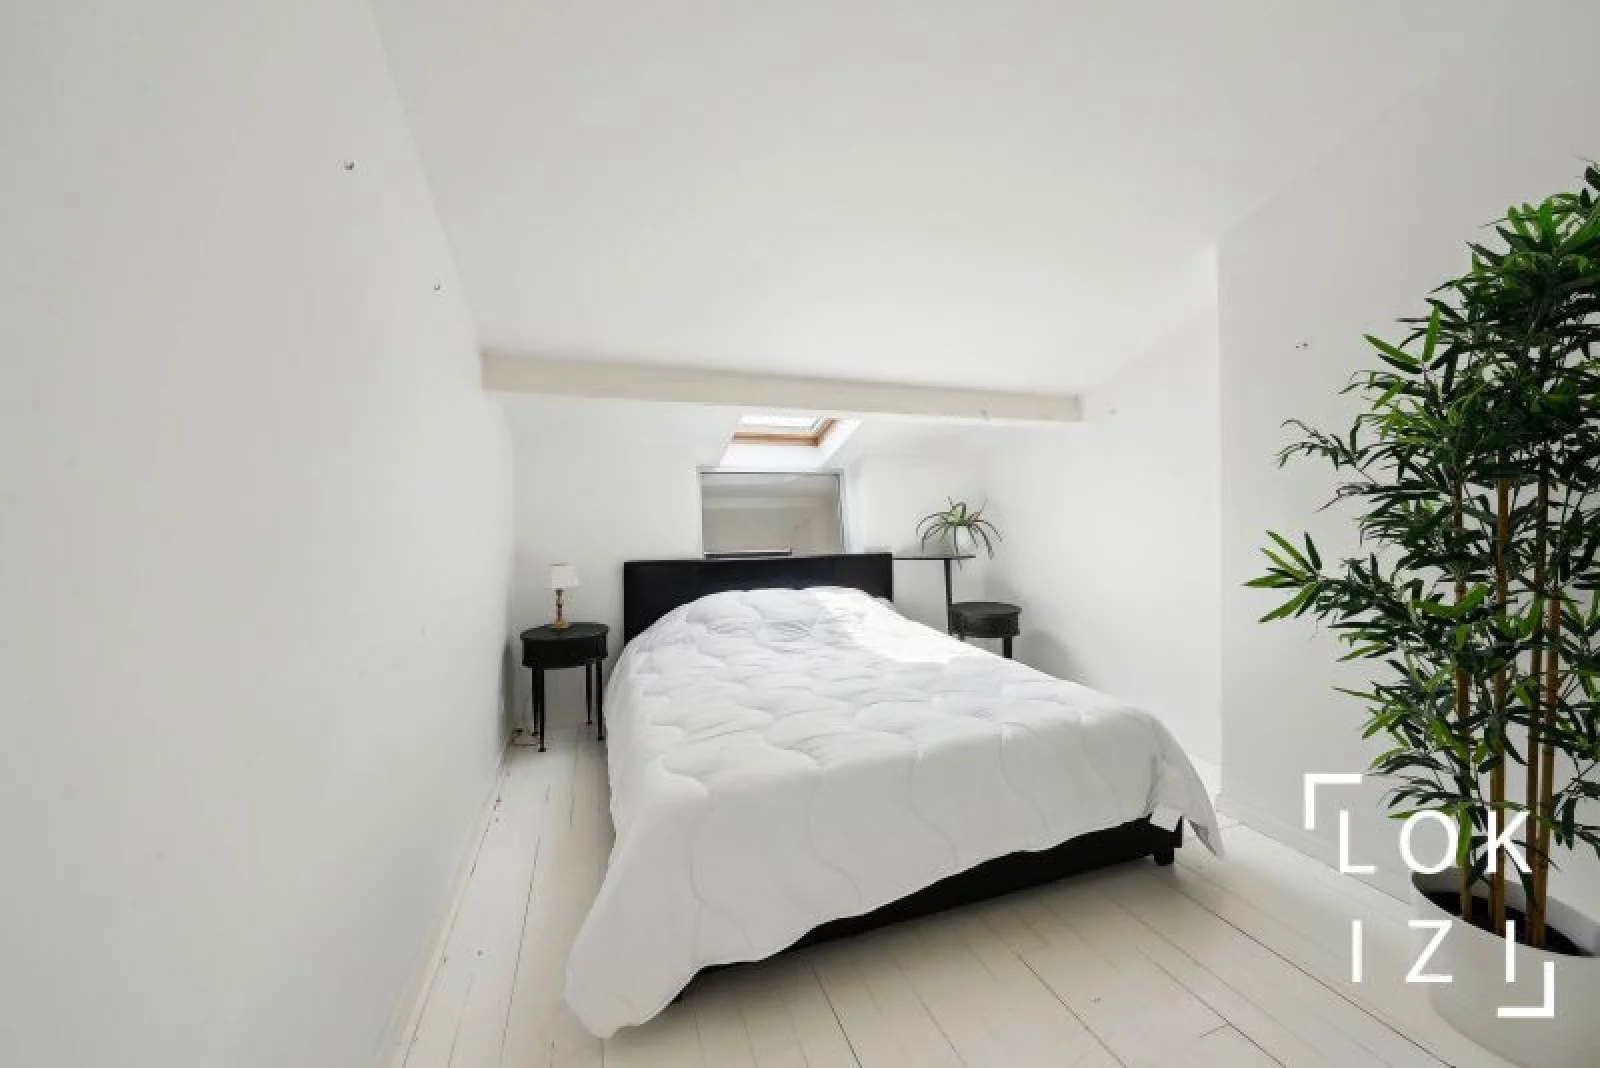 Location appartement meublé 3 pièces 78m² (Bordeaux-Fondaudège)